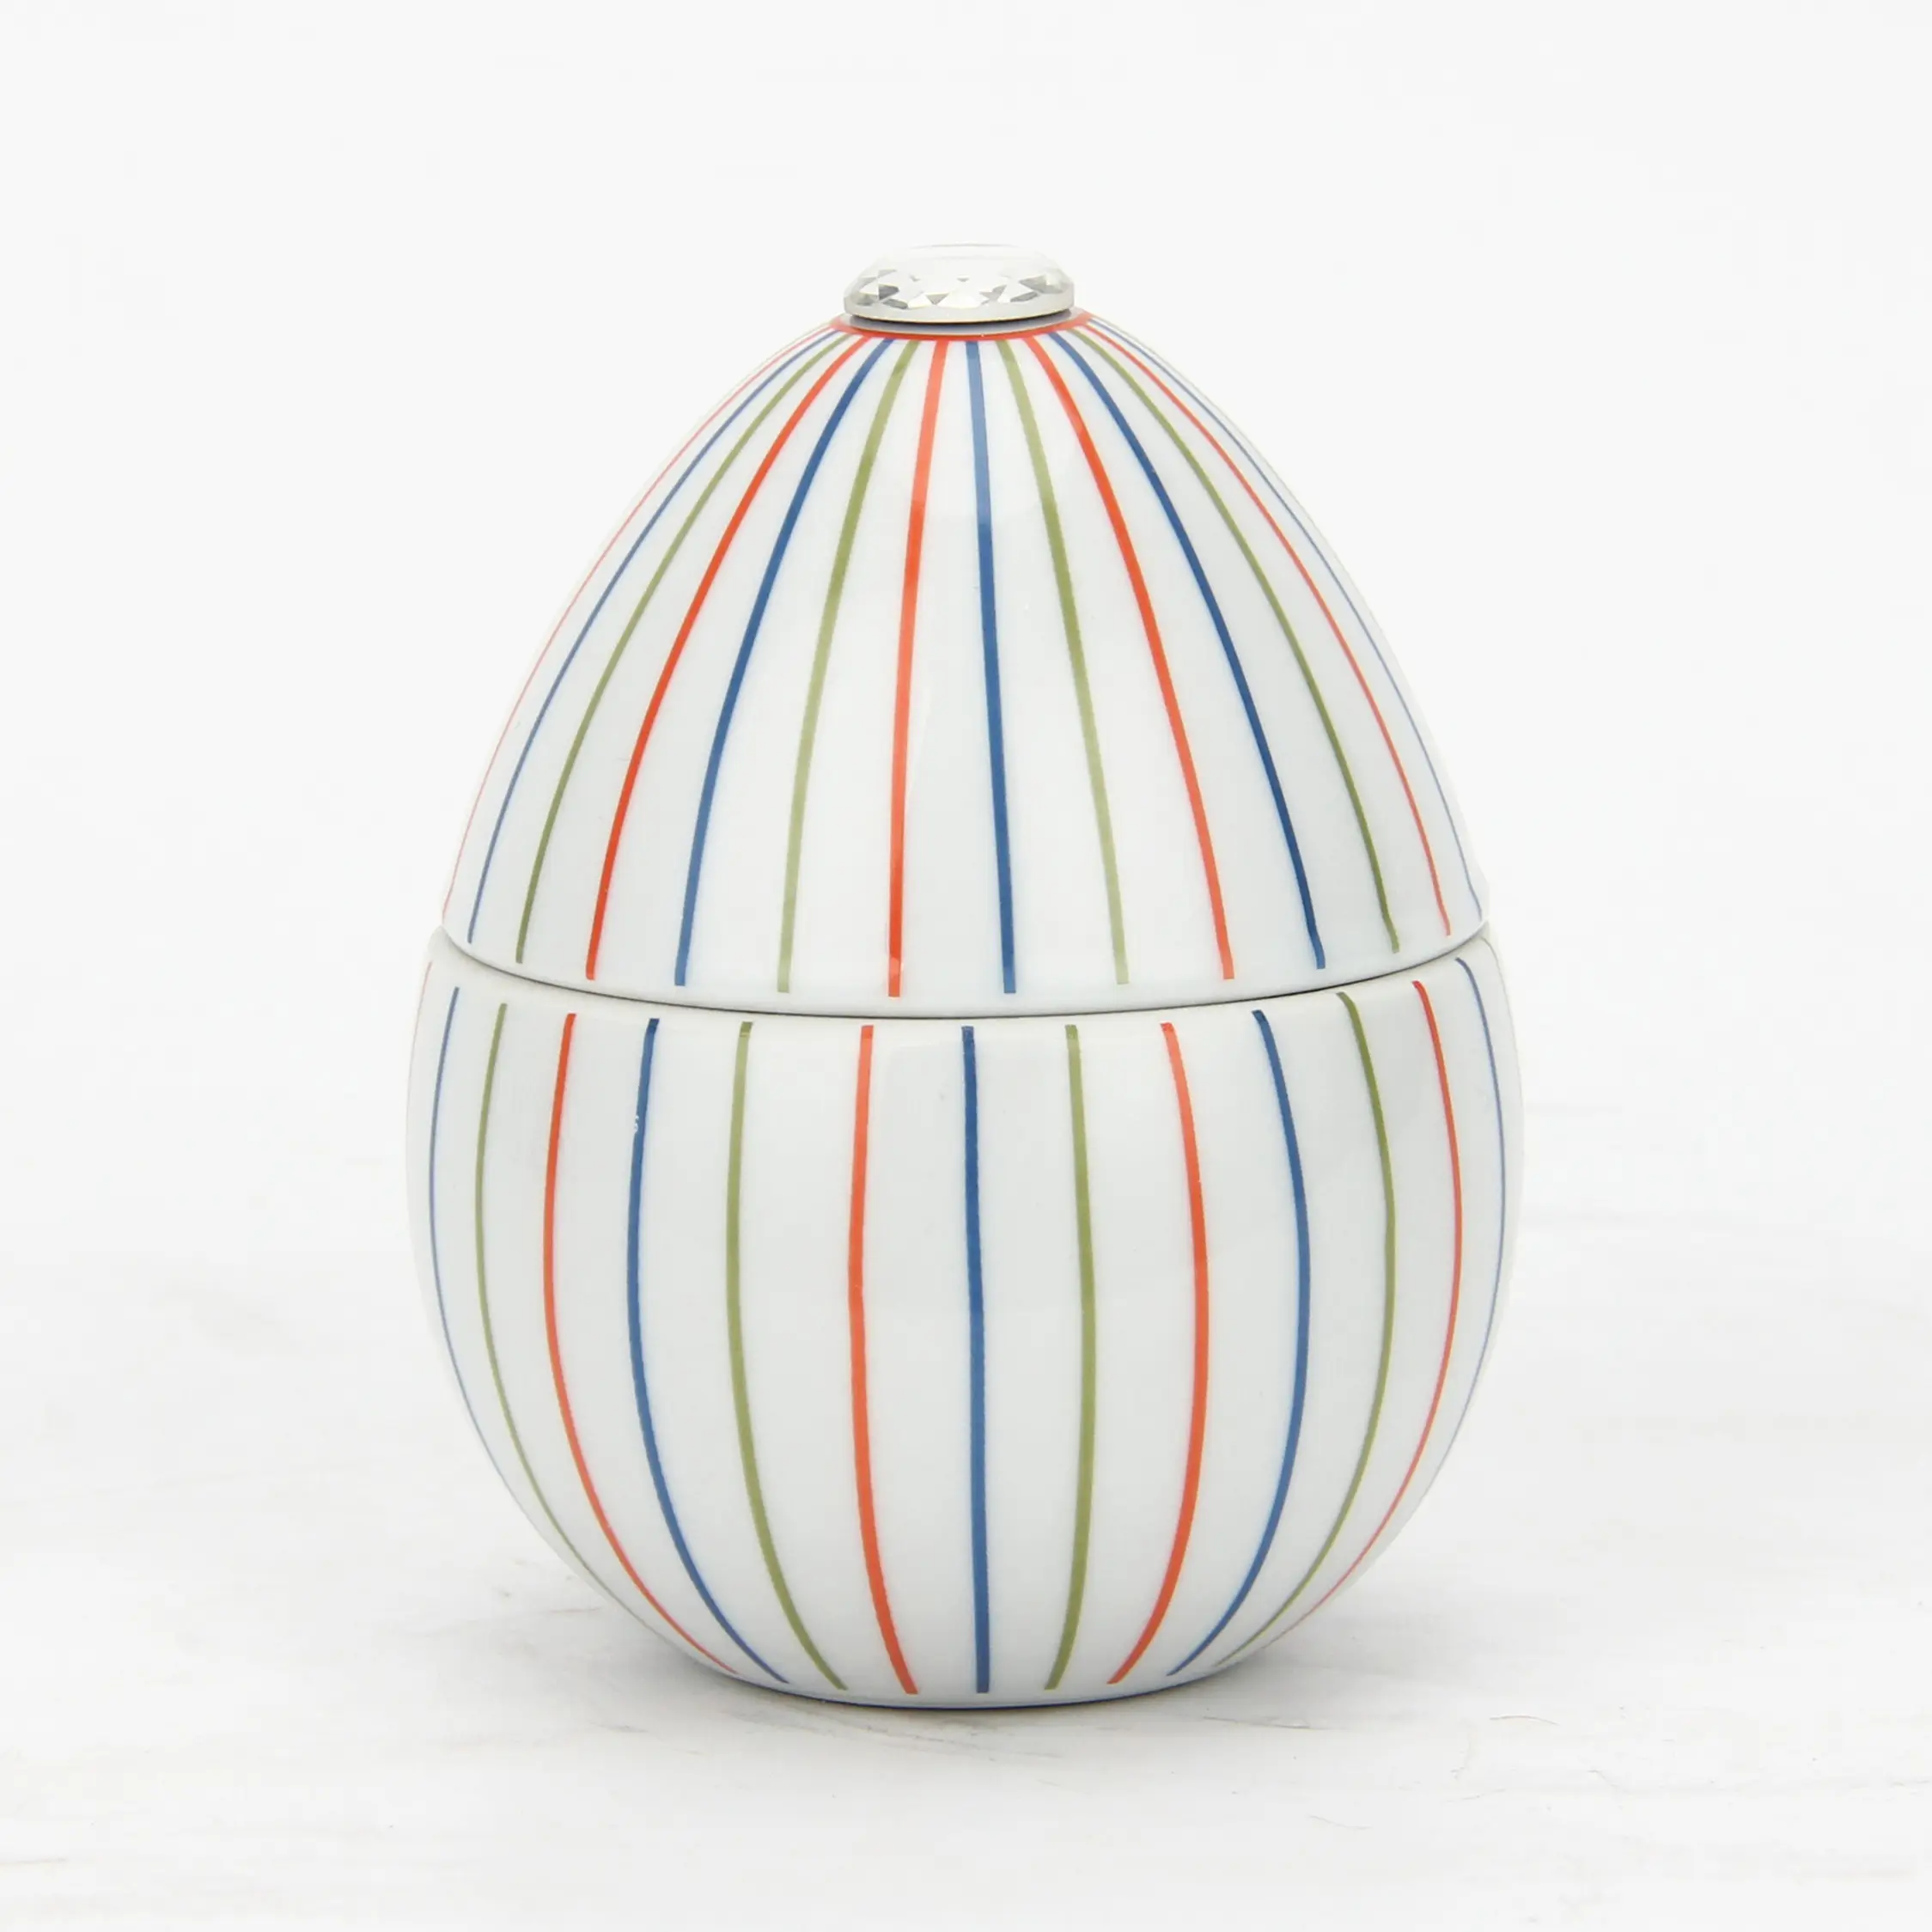 C009 egg shaped ceramic jar wholesale with lid decor candle stick holedle christmas white candle holder